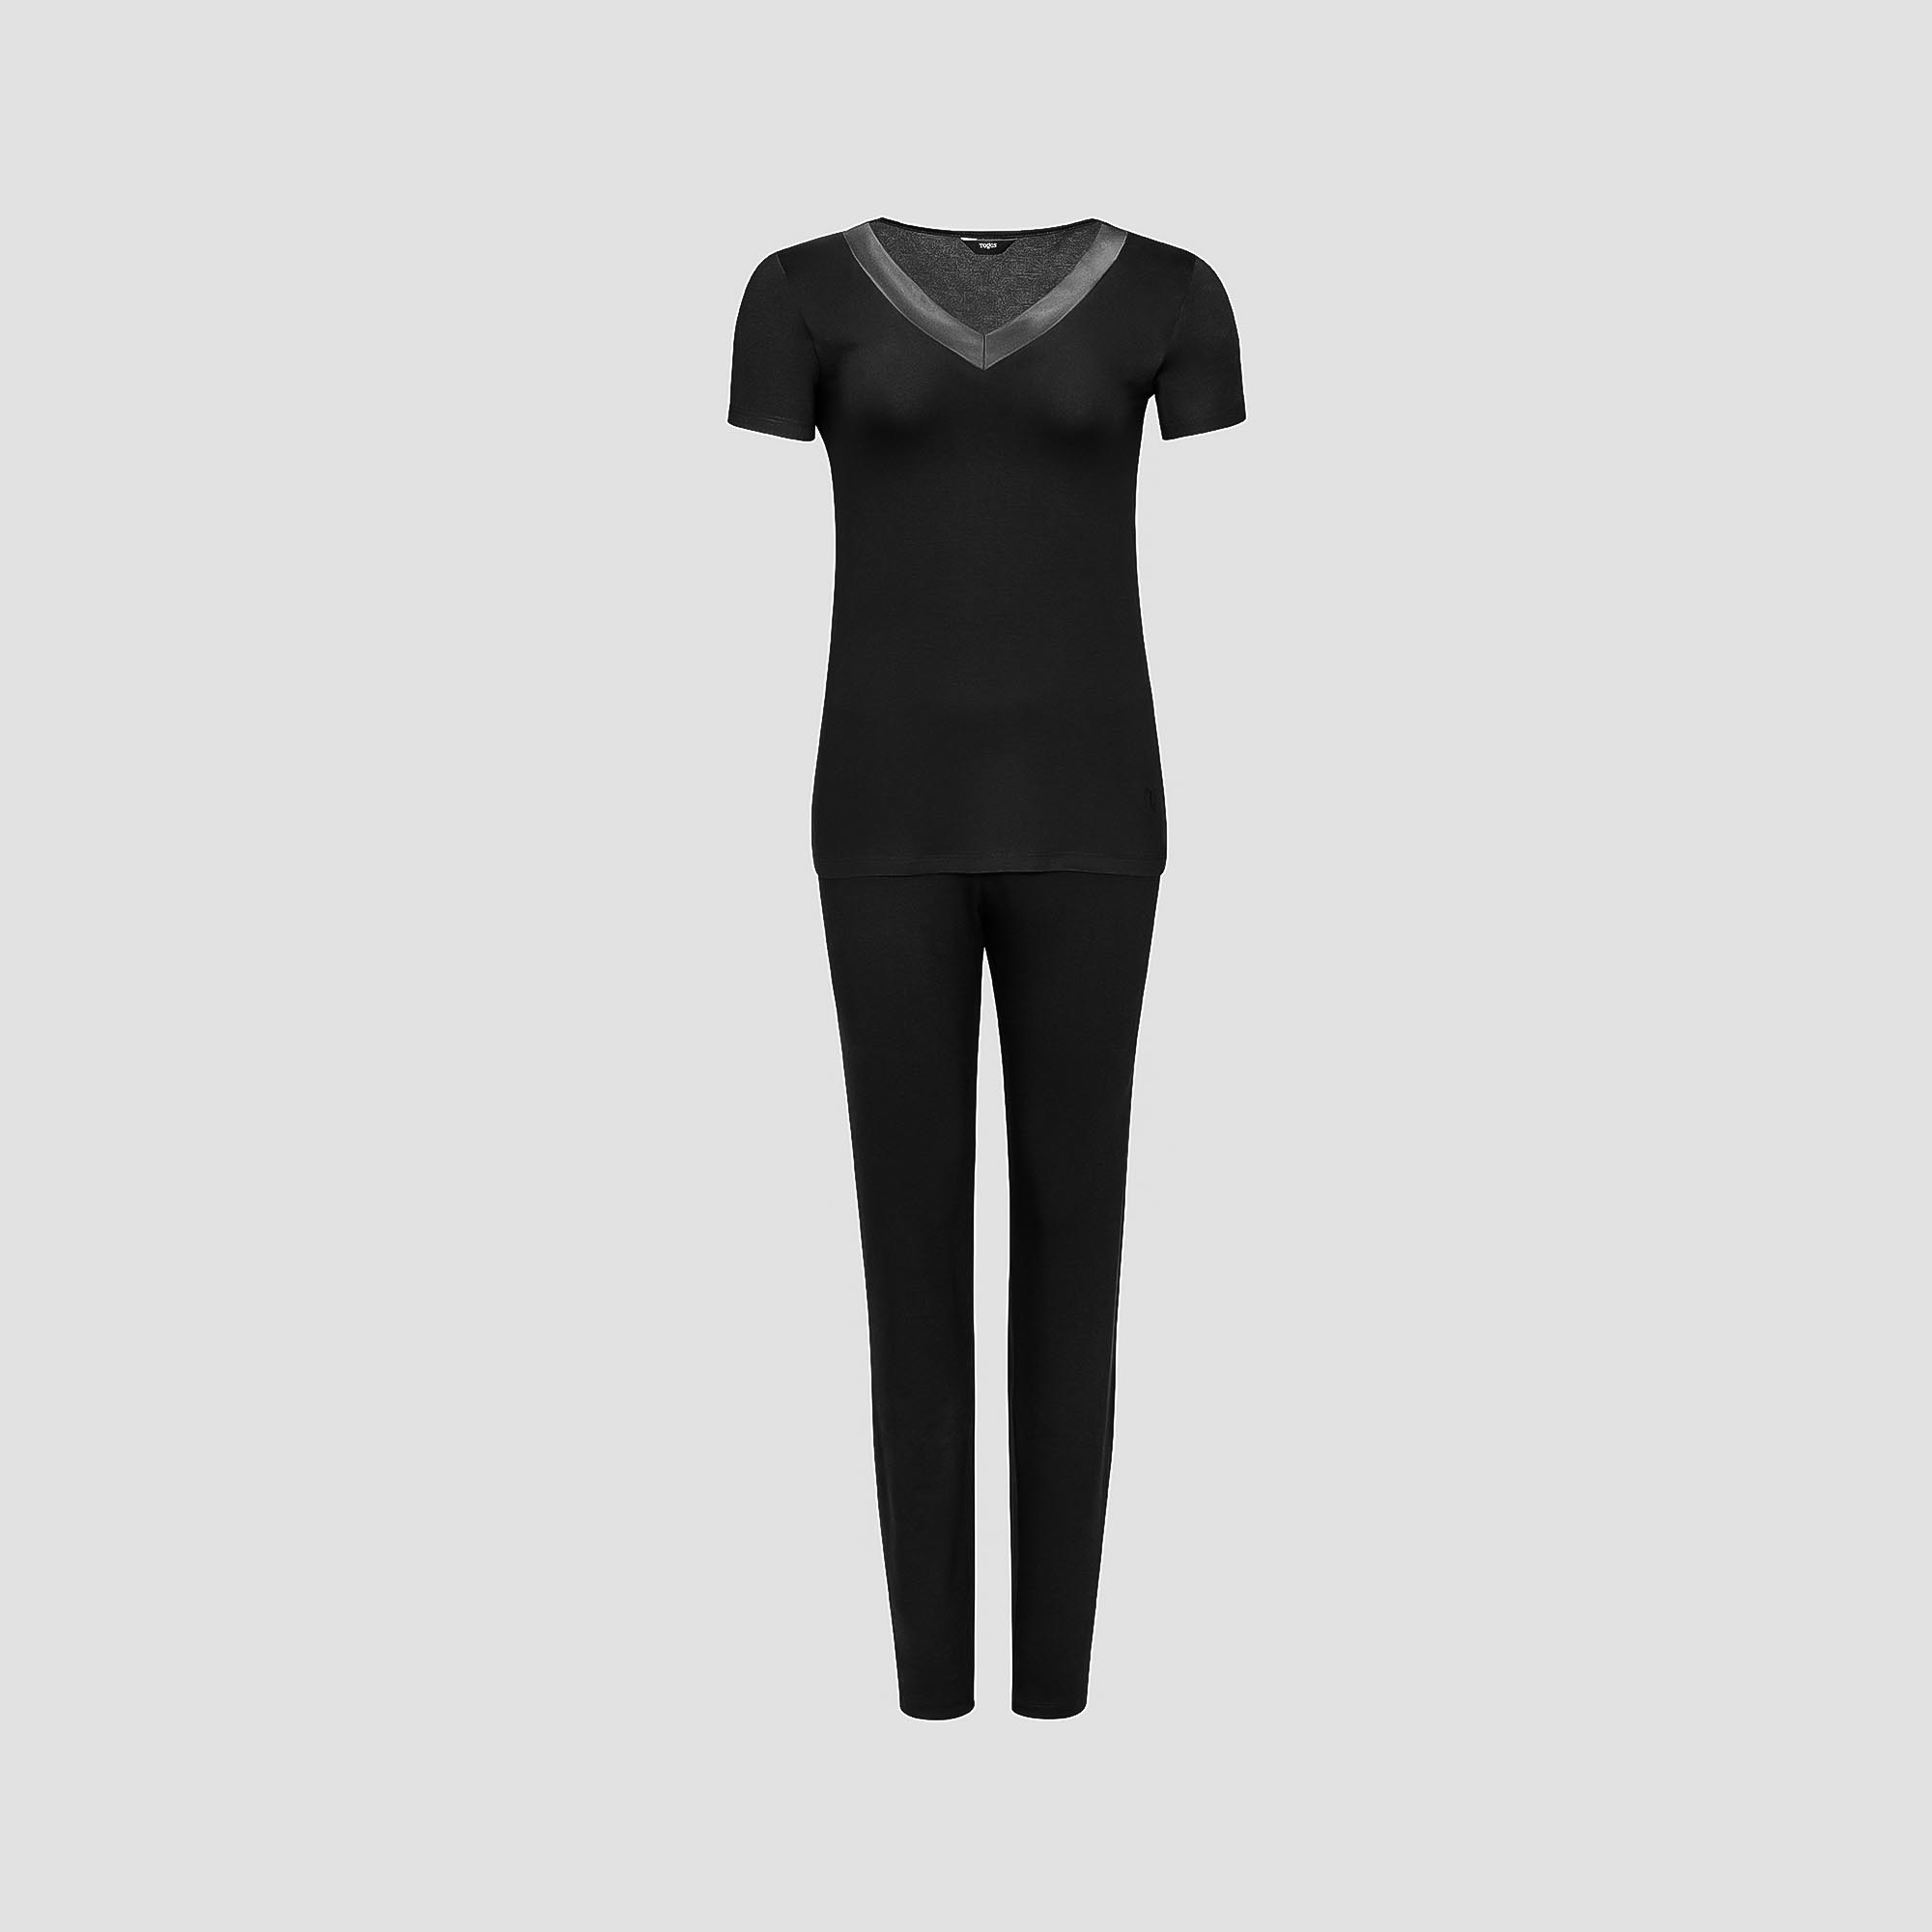 Пижама Togas Ингелла черная женская XXL(52) 2 предмета